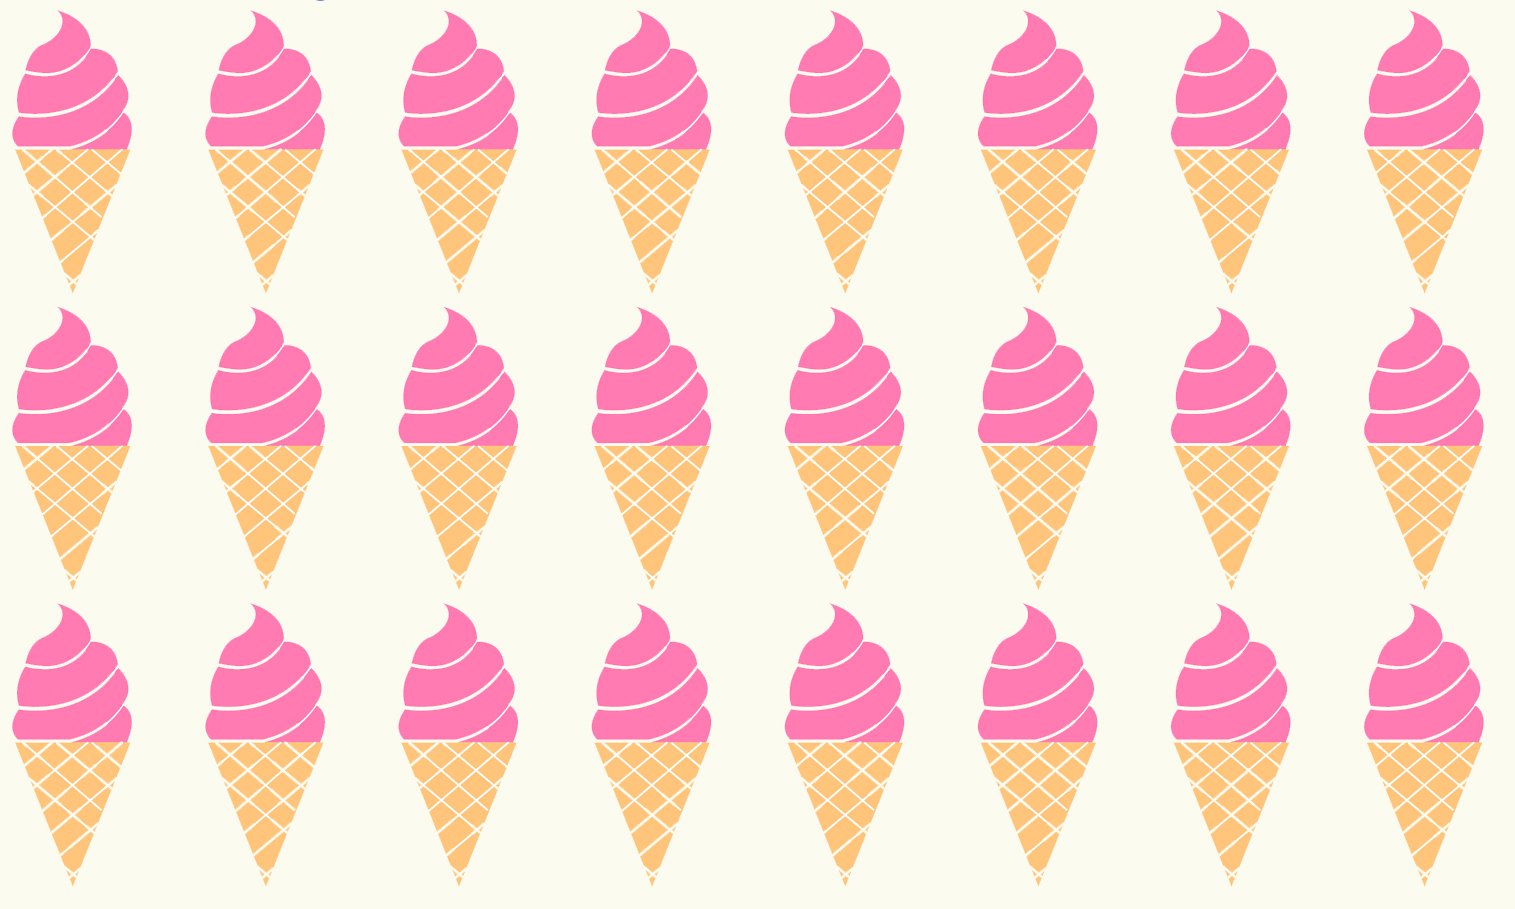 Acertijo visual: ¿puedes encontrar el helado diferente al resto?